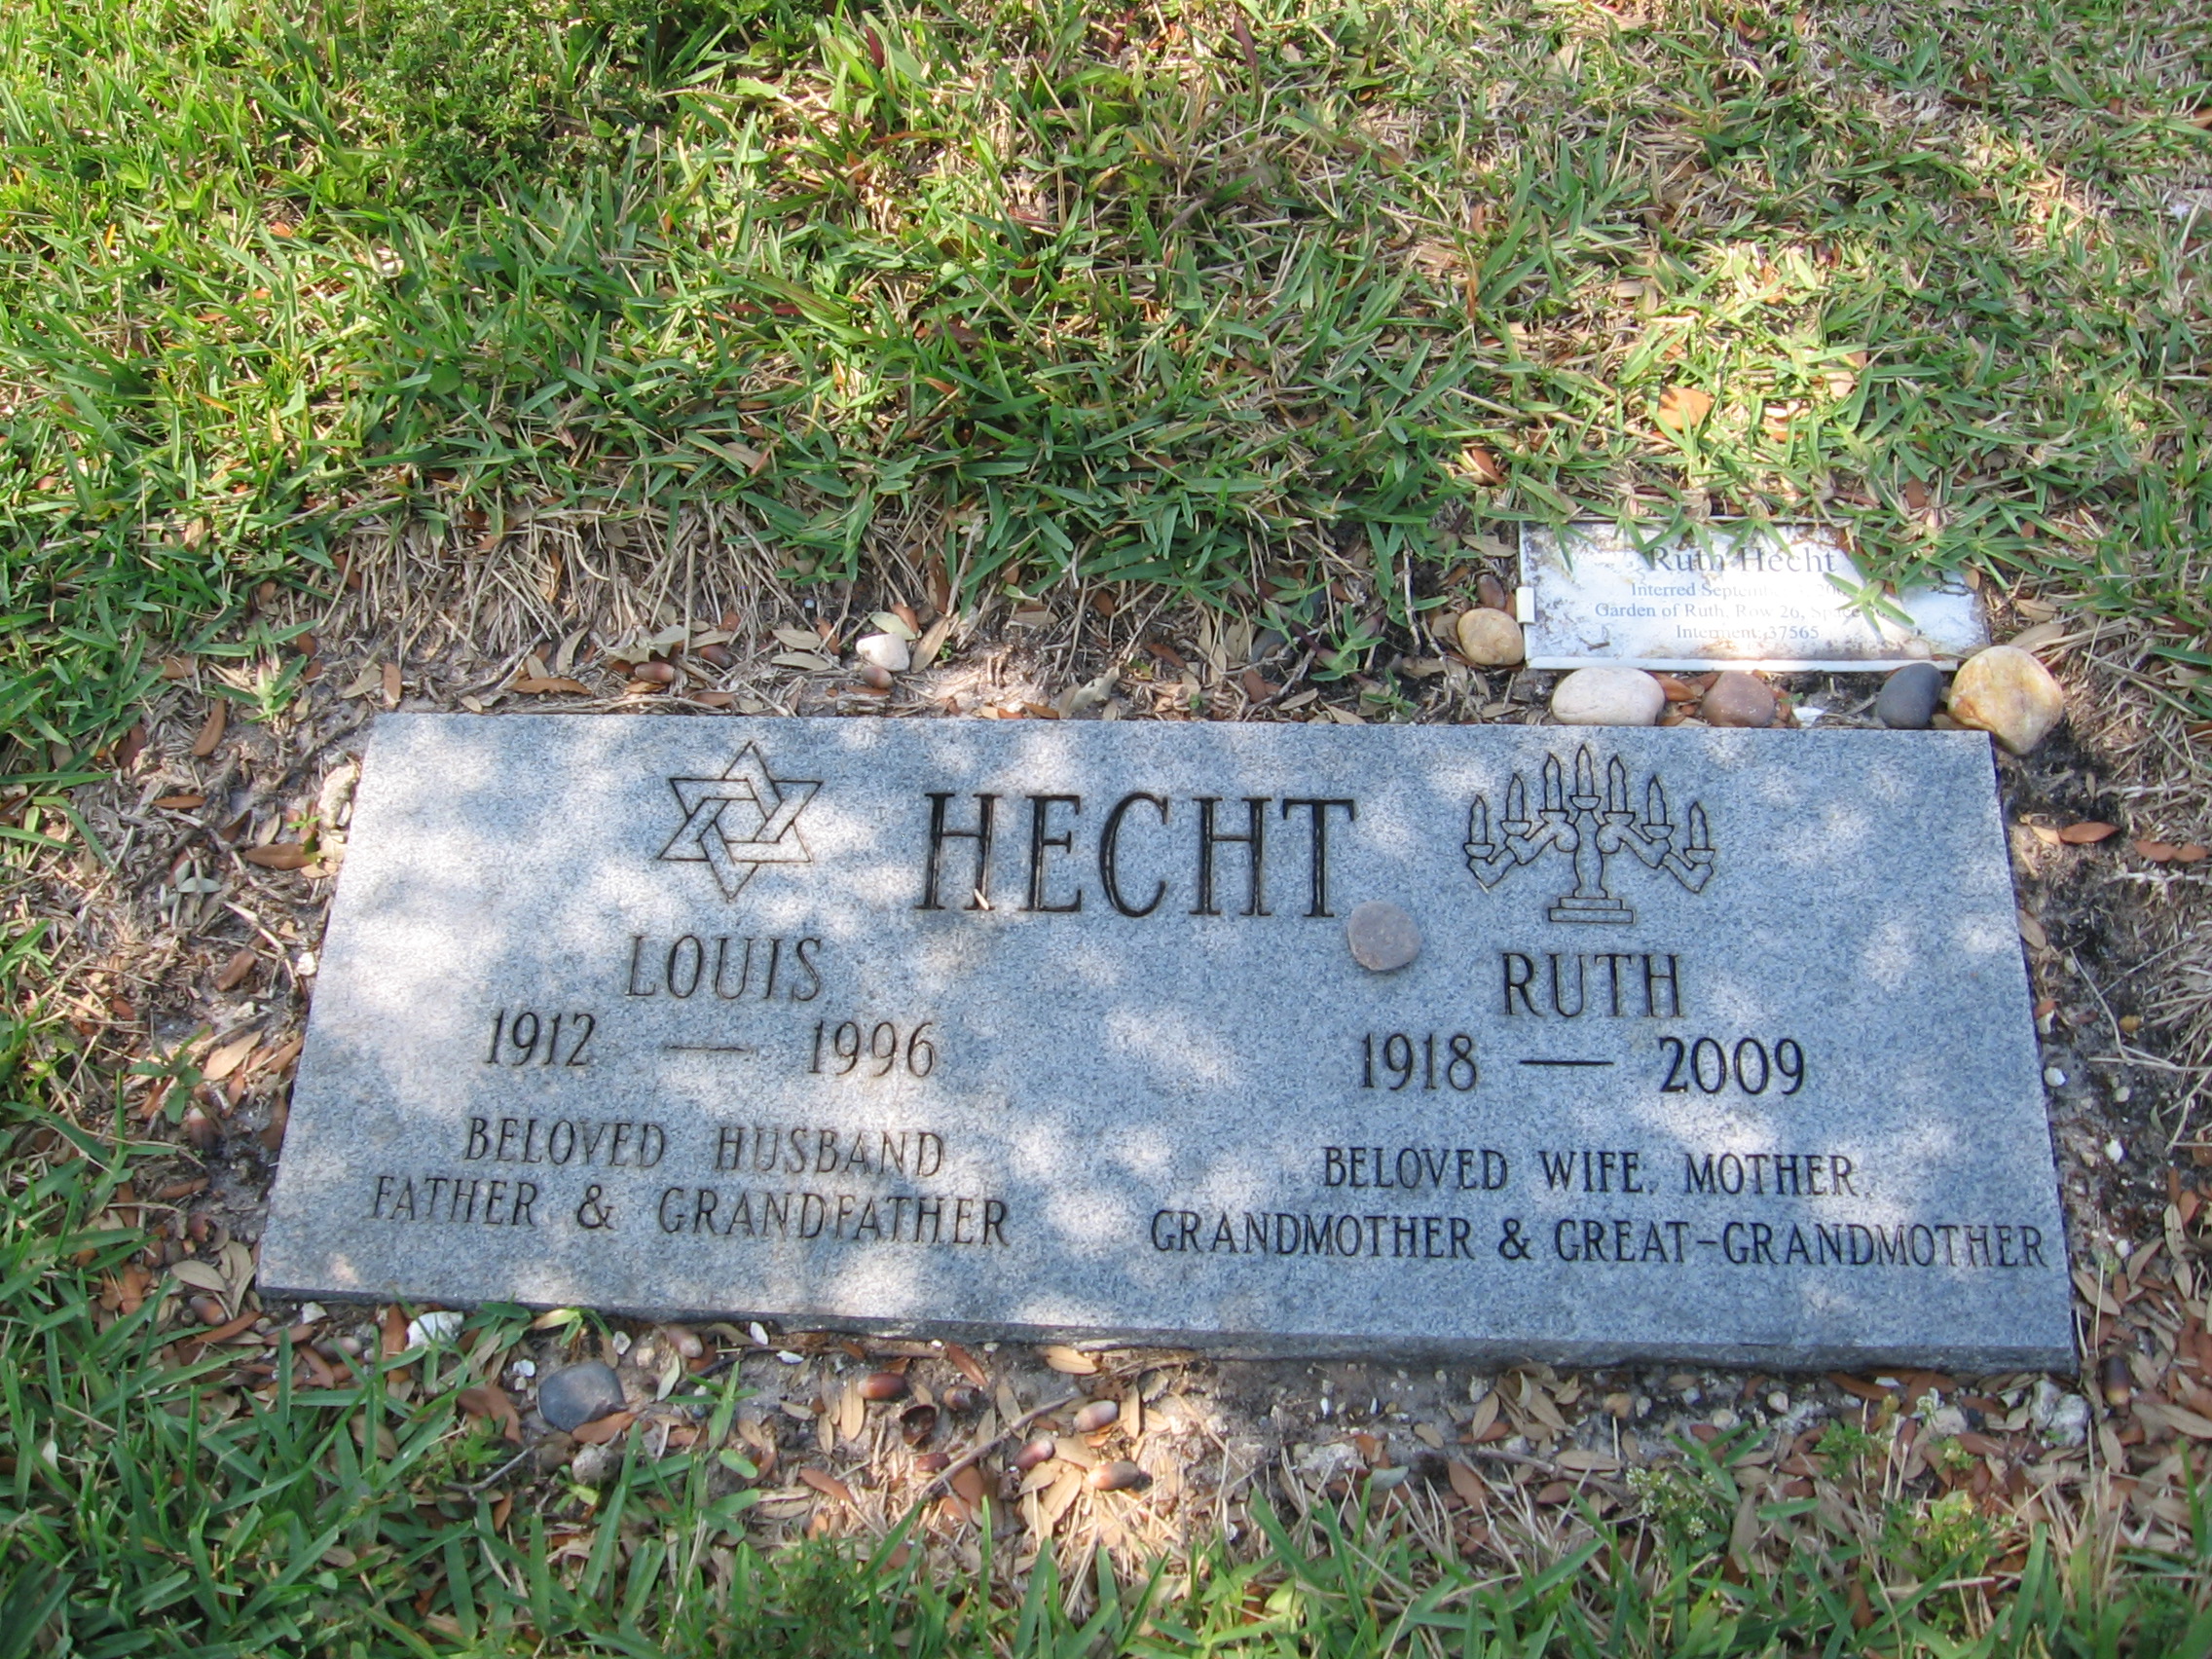 Ruth Hecht